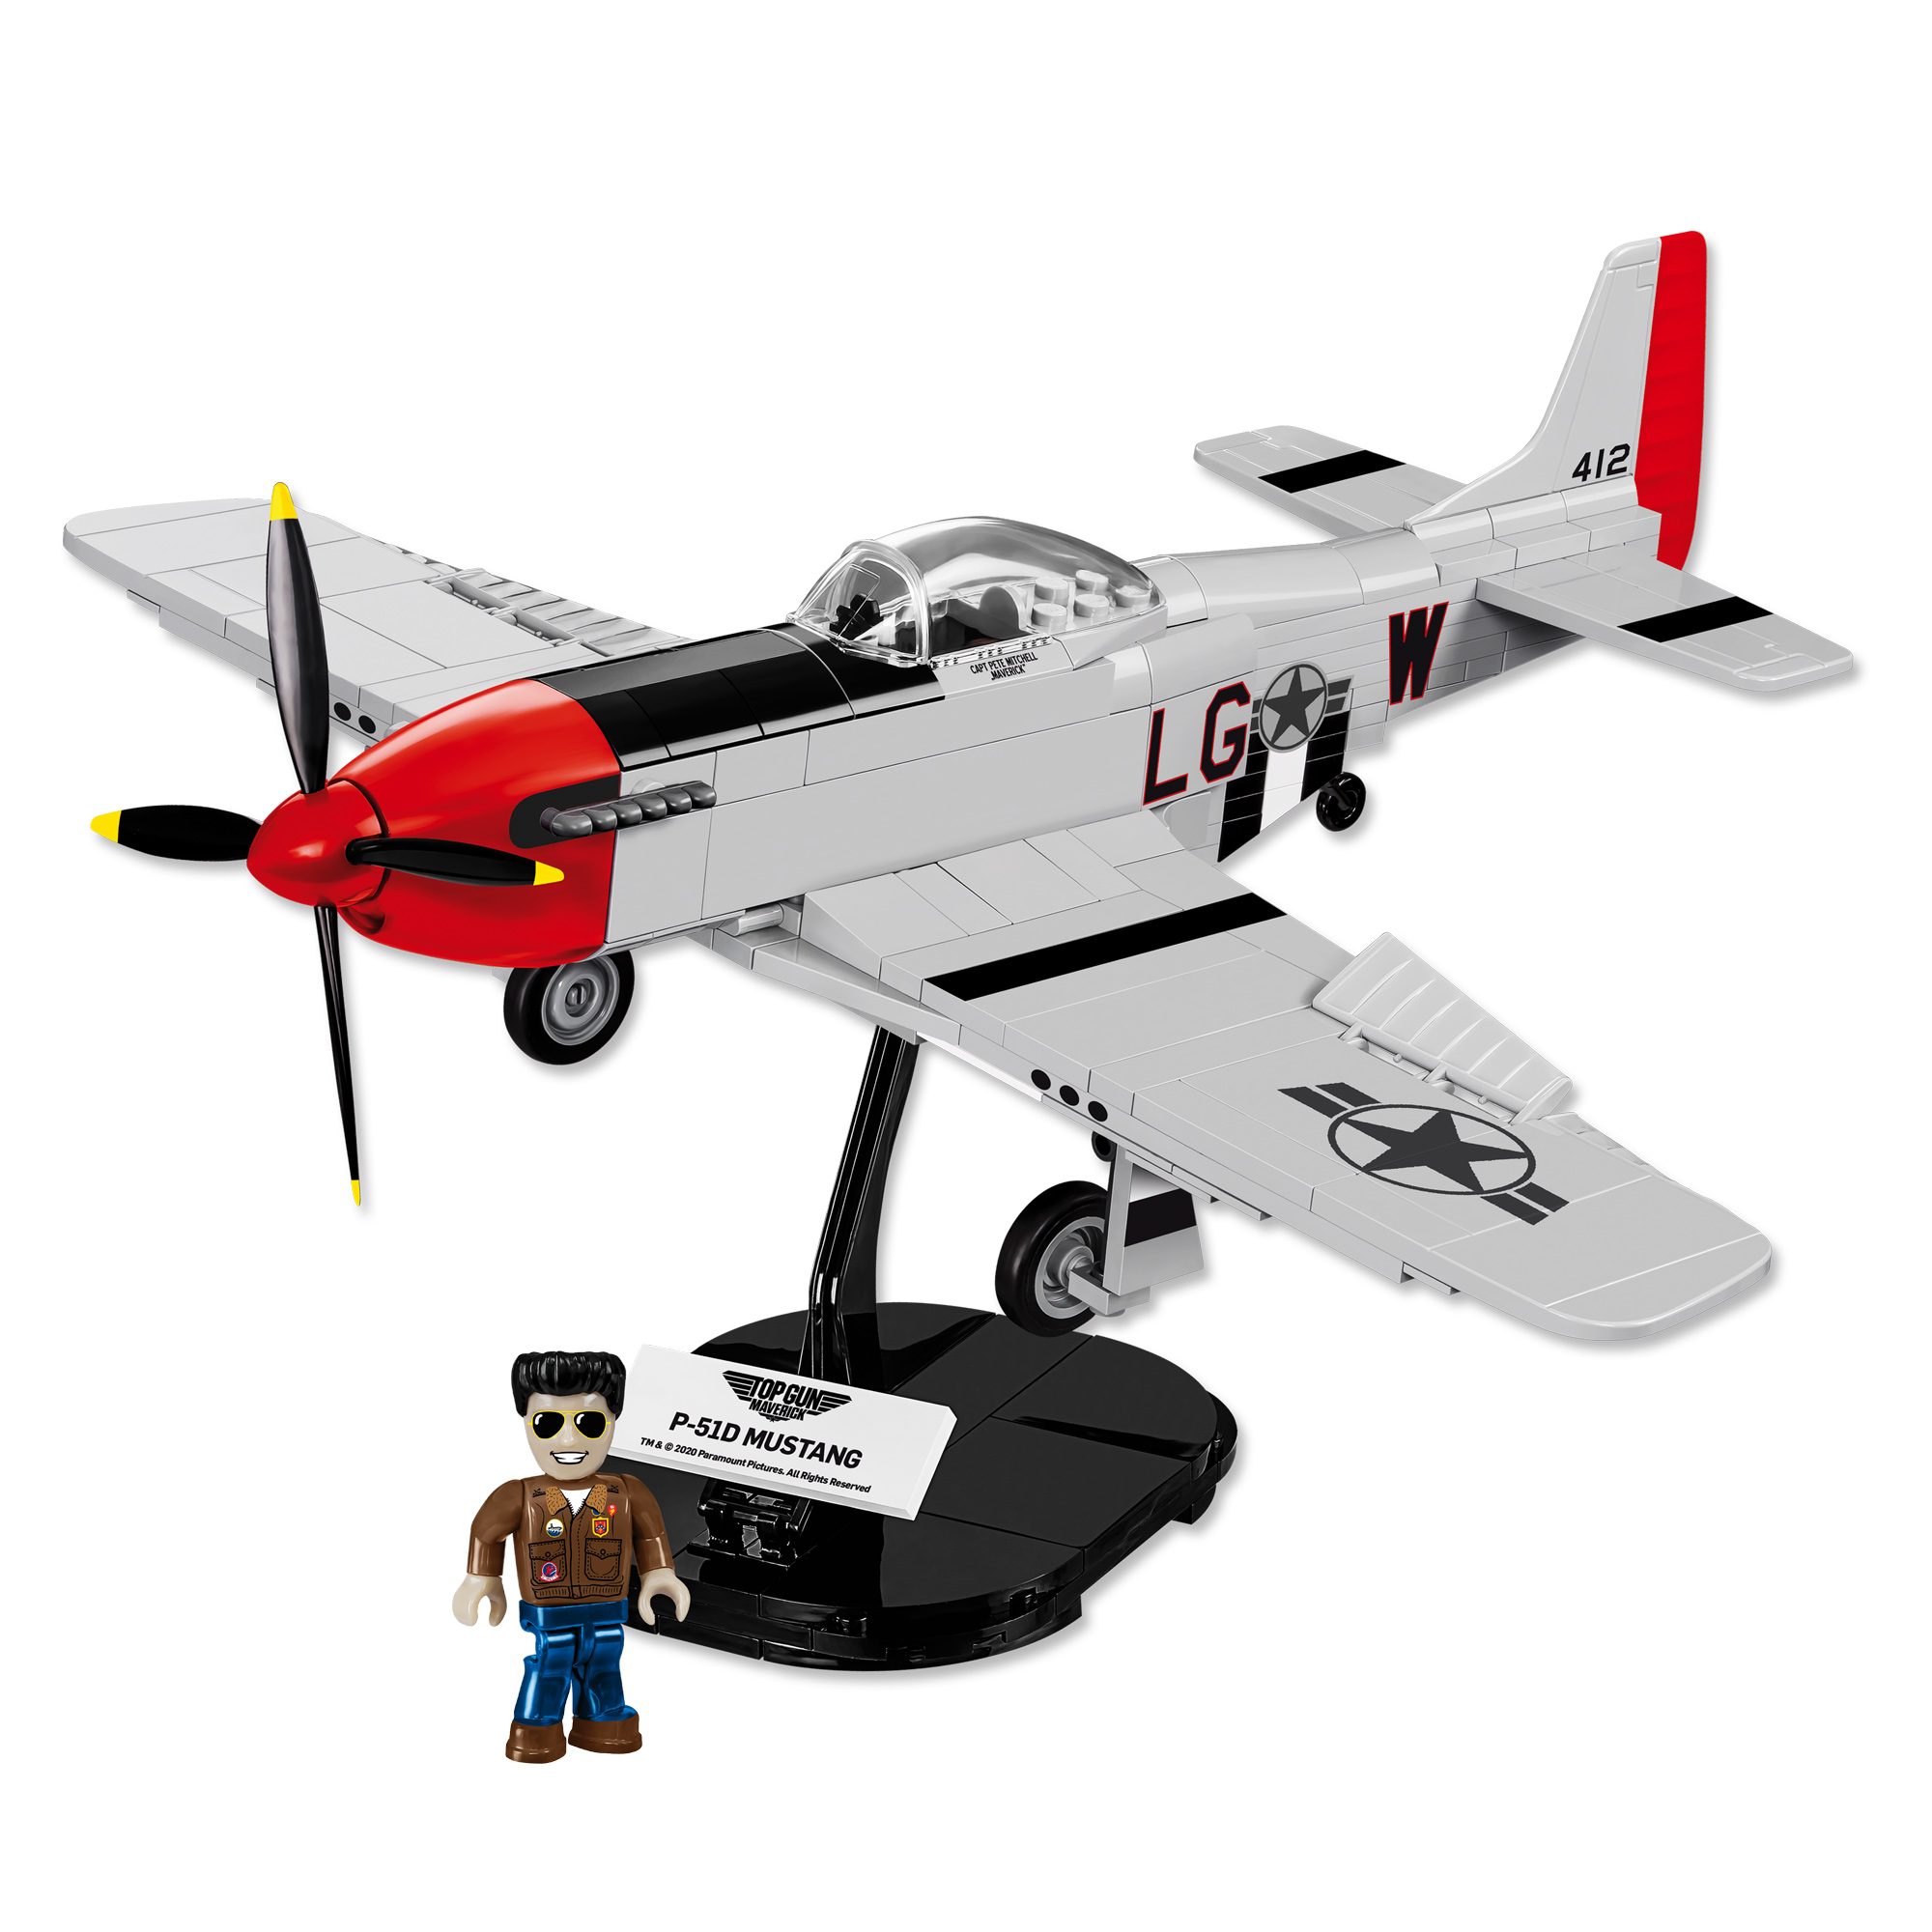 P-51D Mustang - Cobi Klemmbausteine 1012-DH-0000 - 4